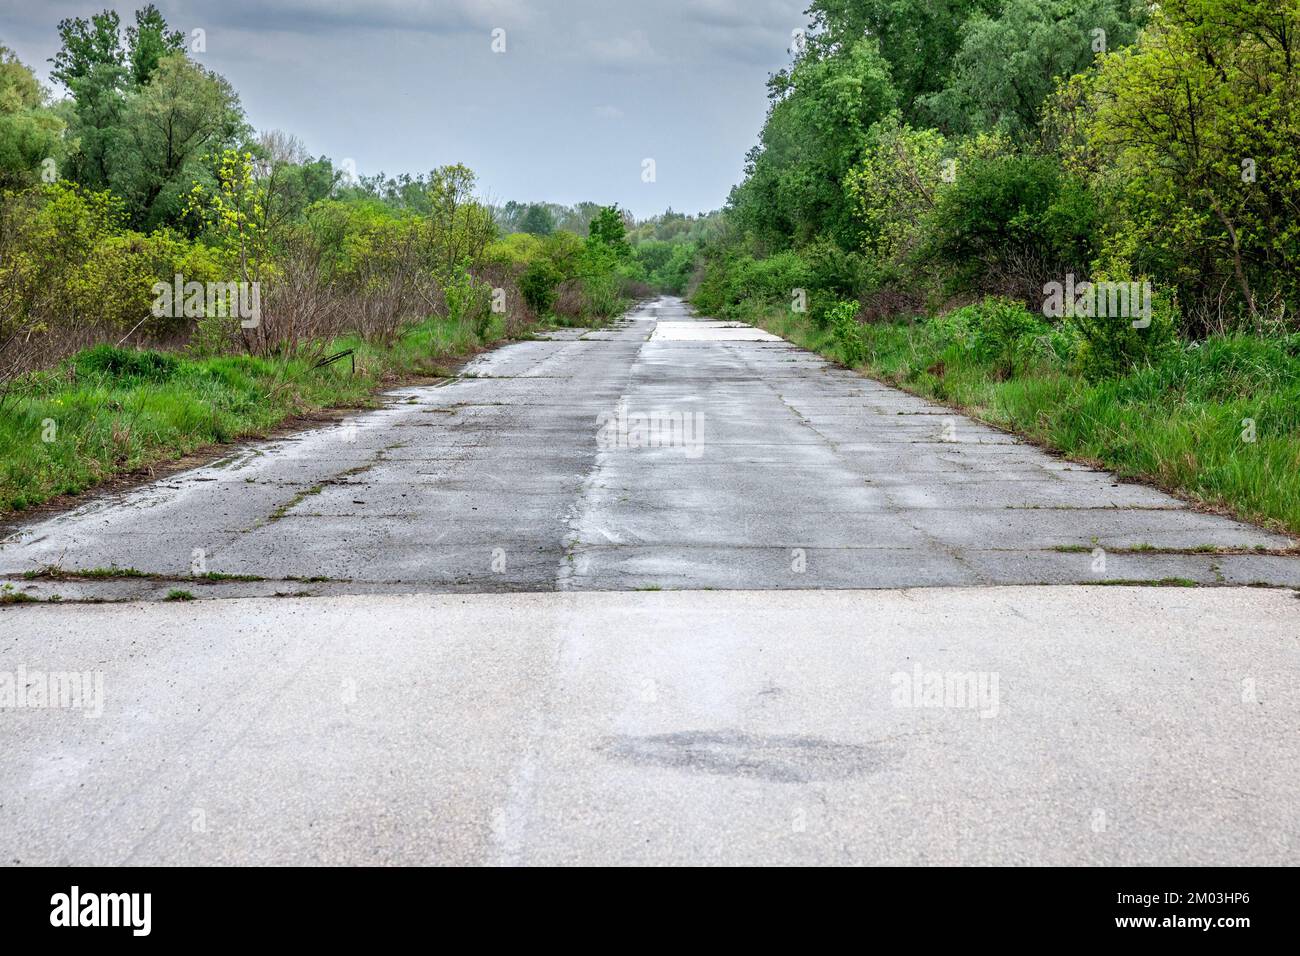 Imagen de una carretera abandonada en Europa con asfalto dañado, agrietado, durante una tarde lluviosa. Foto de stock